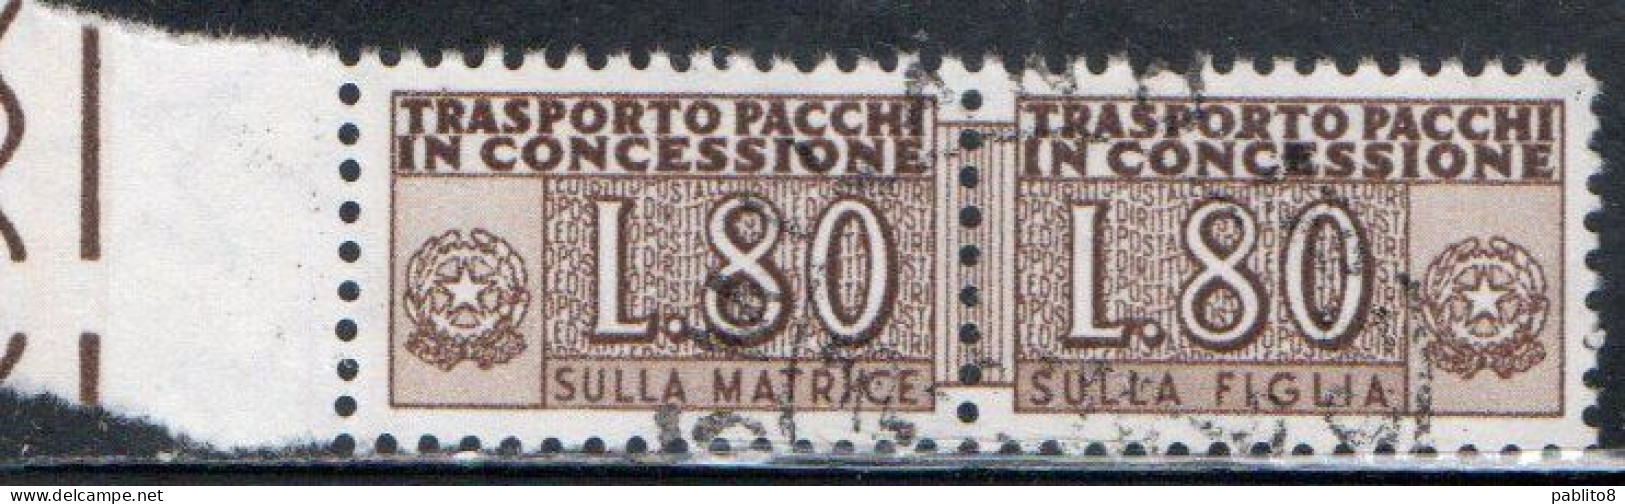 ITALIA REPUBBLICA ITALY REPUBLIC 1955 1981 PACCHI IN CONCESSIONE PARCEL POST STELLE STARS 1960 LIRE 80 USATO USED OBLIT - Concessiepaketten